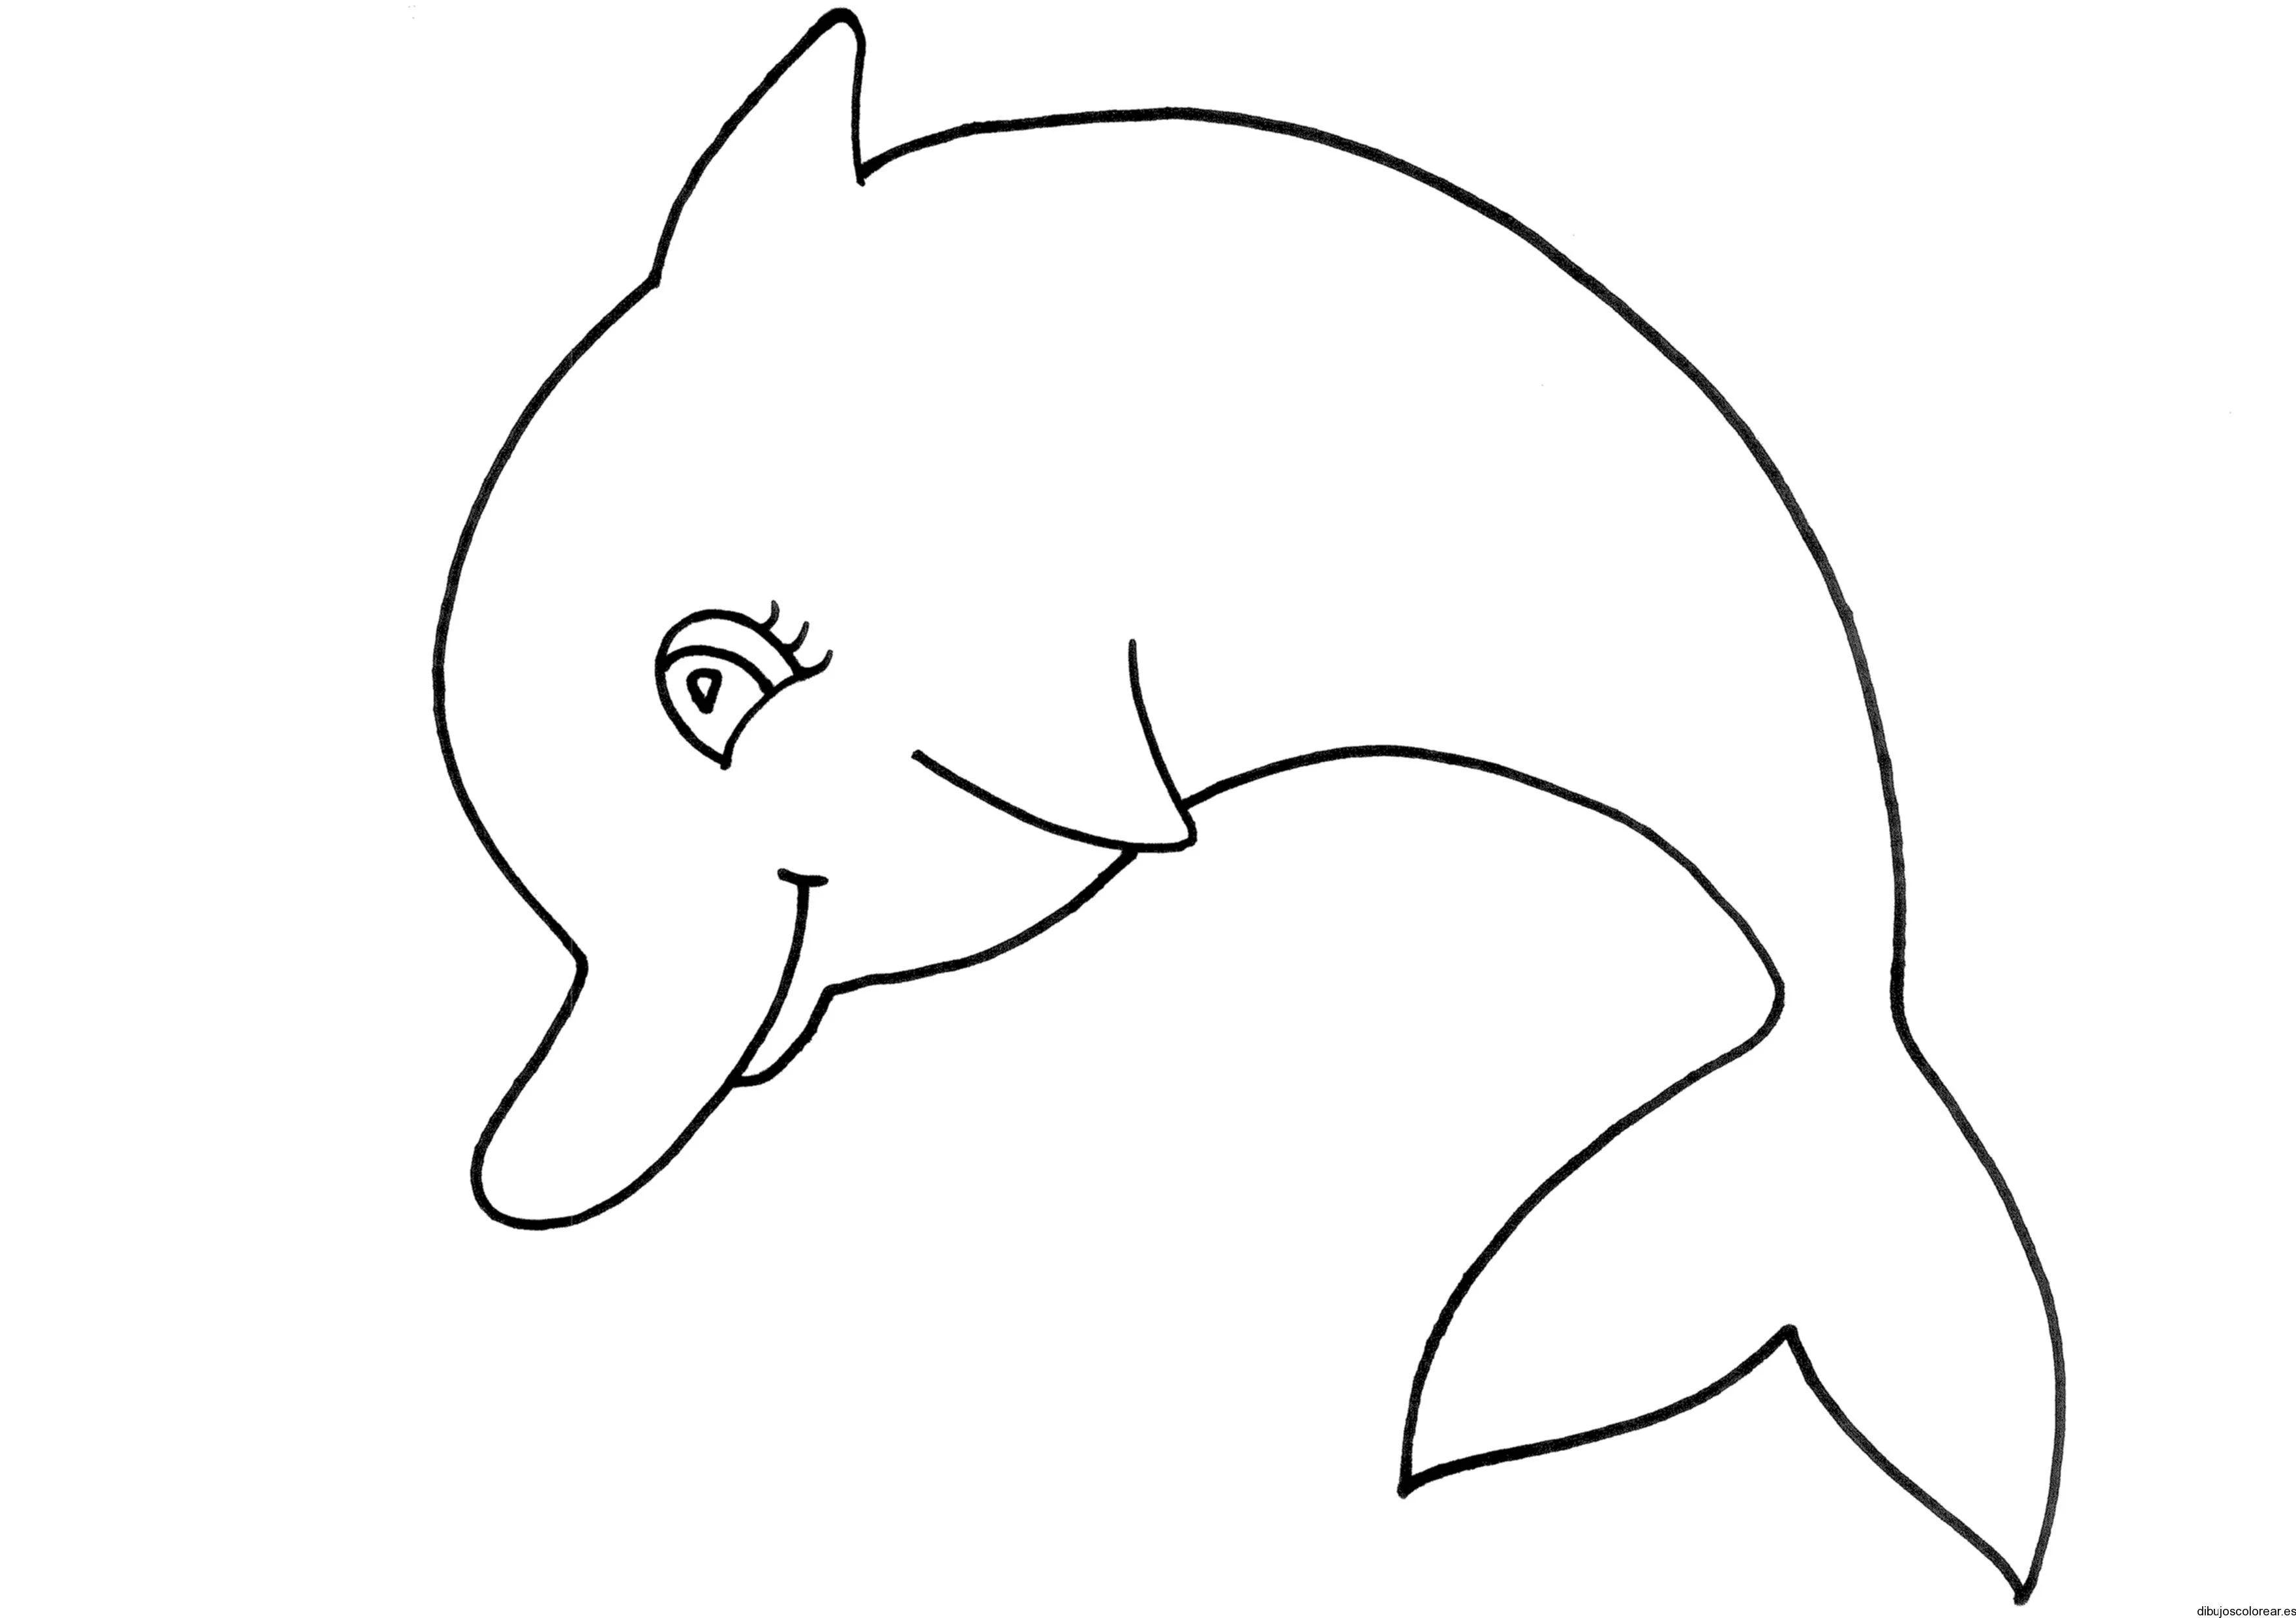 Dibujo de un delfín | Dibujos para Colorear